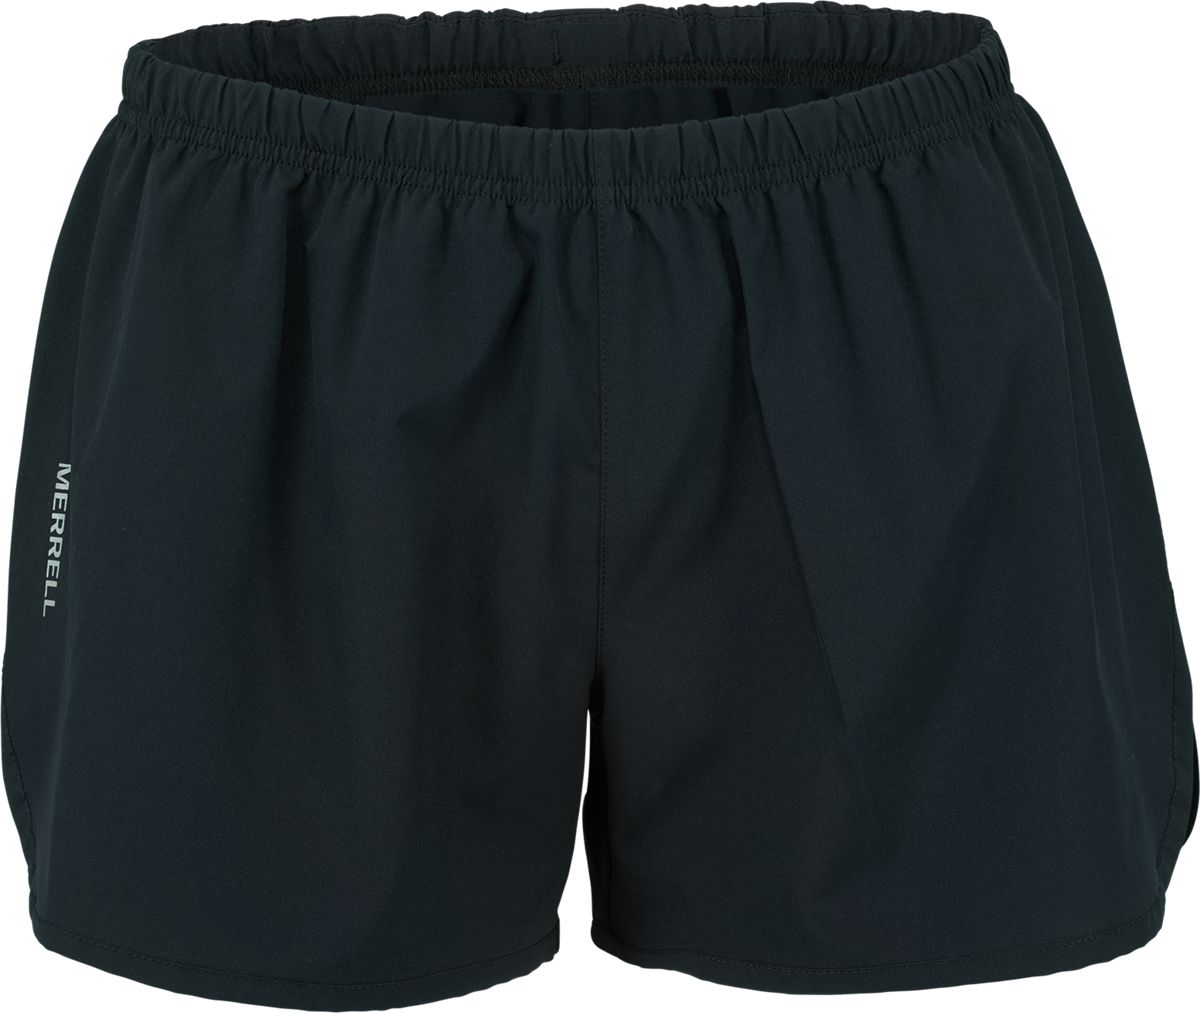 entrada shorts